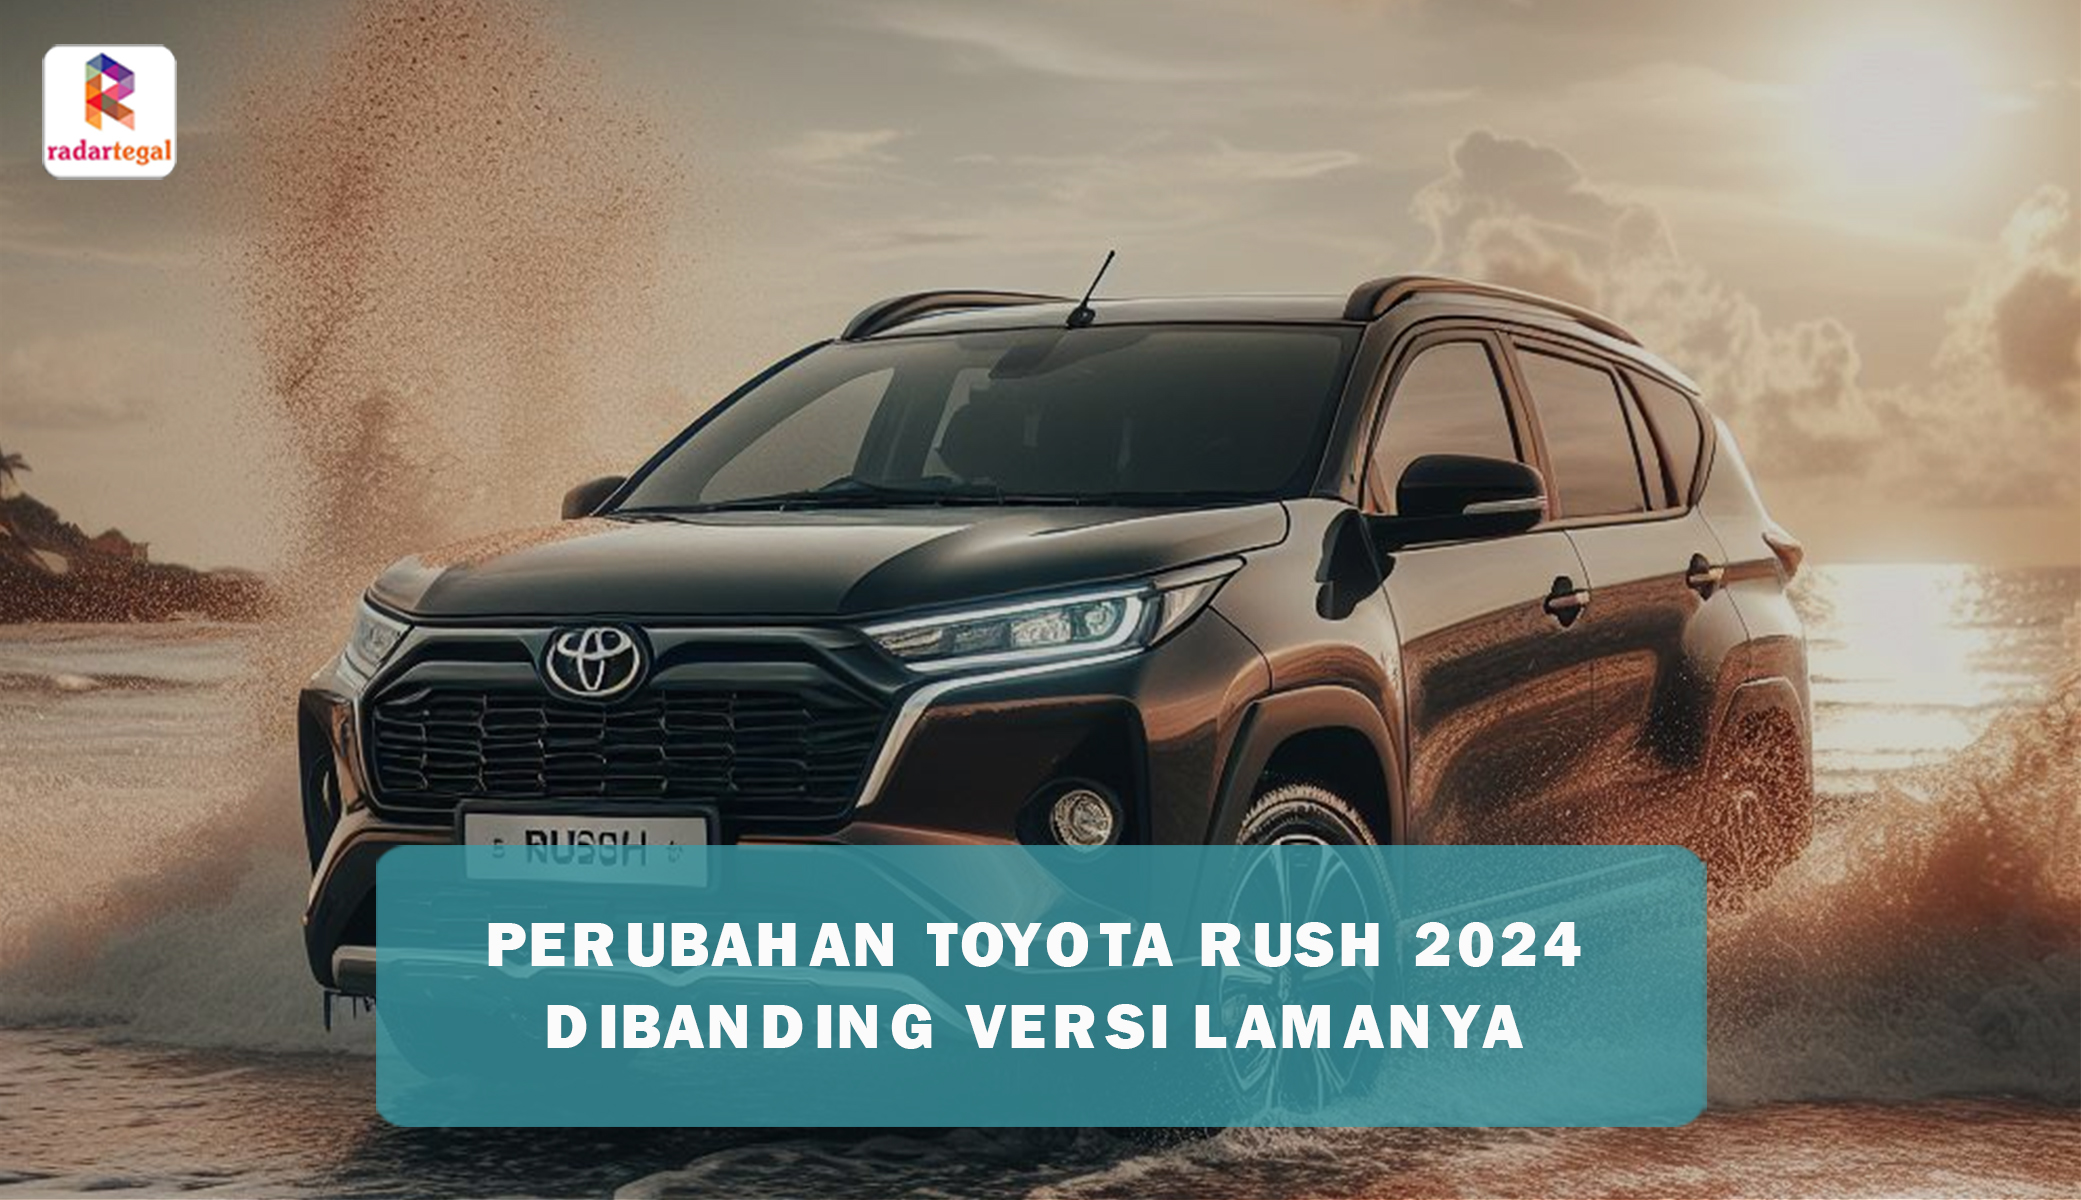 Perubahan Toyota Rush 2024 Lebih Signifikan Dibanding Versi Lamanya, Fitur Lebih Lengkap dan Optimal